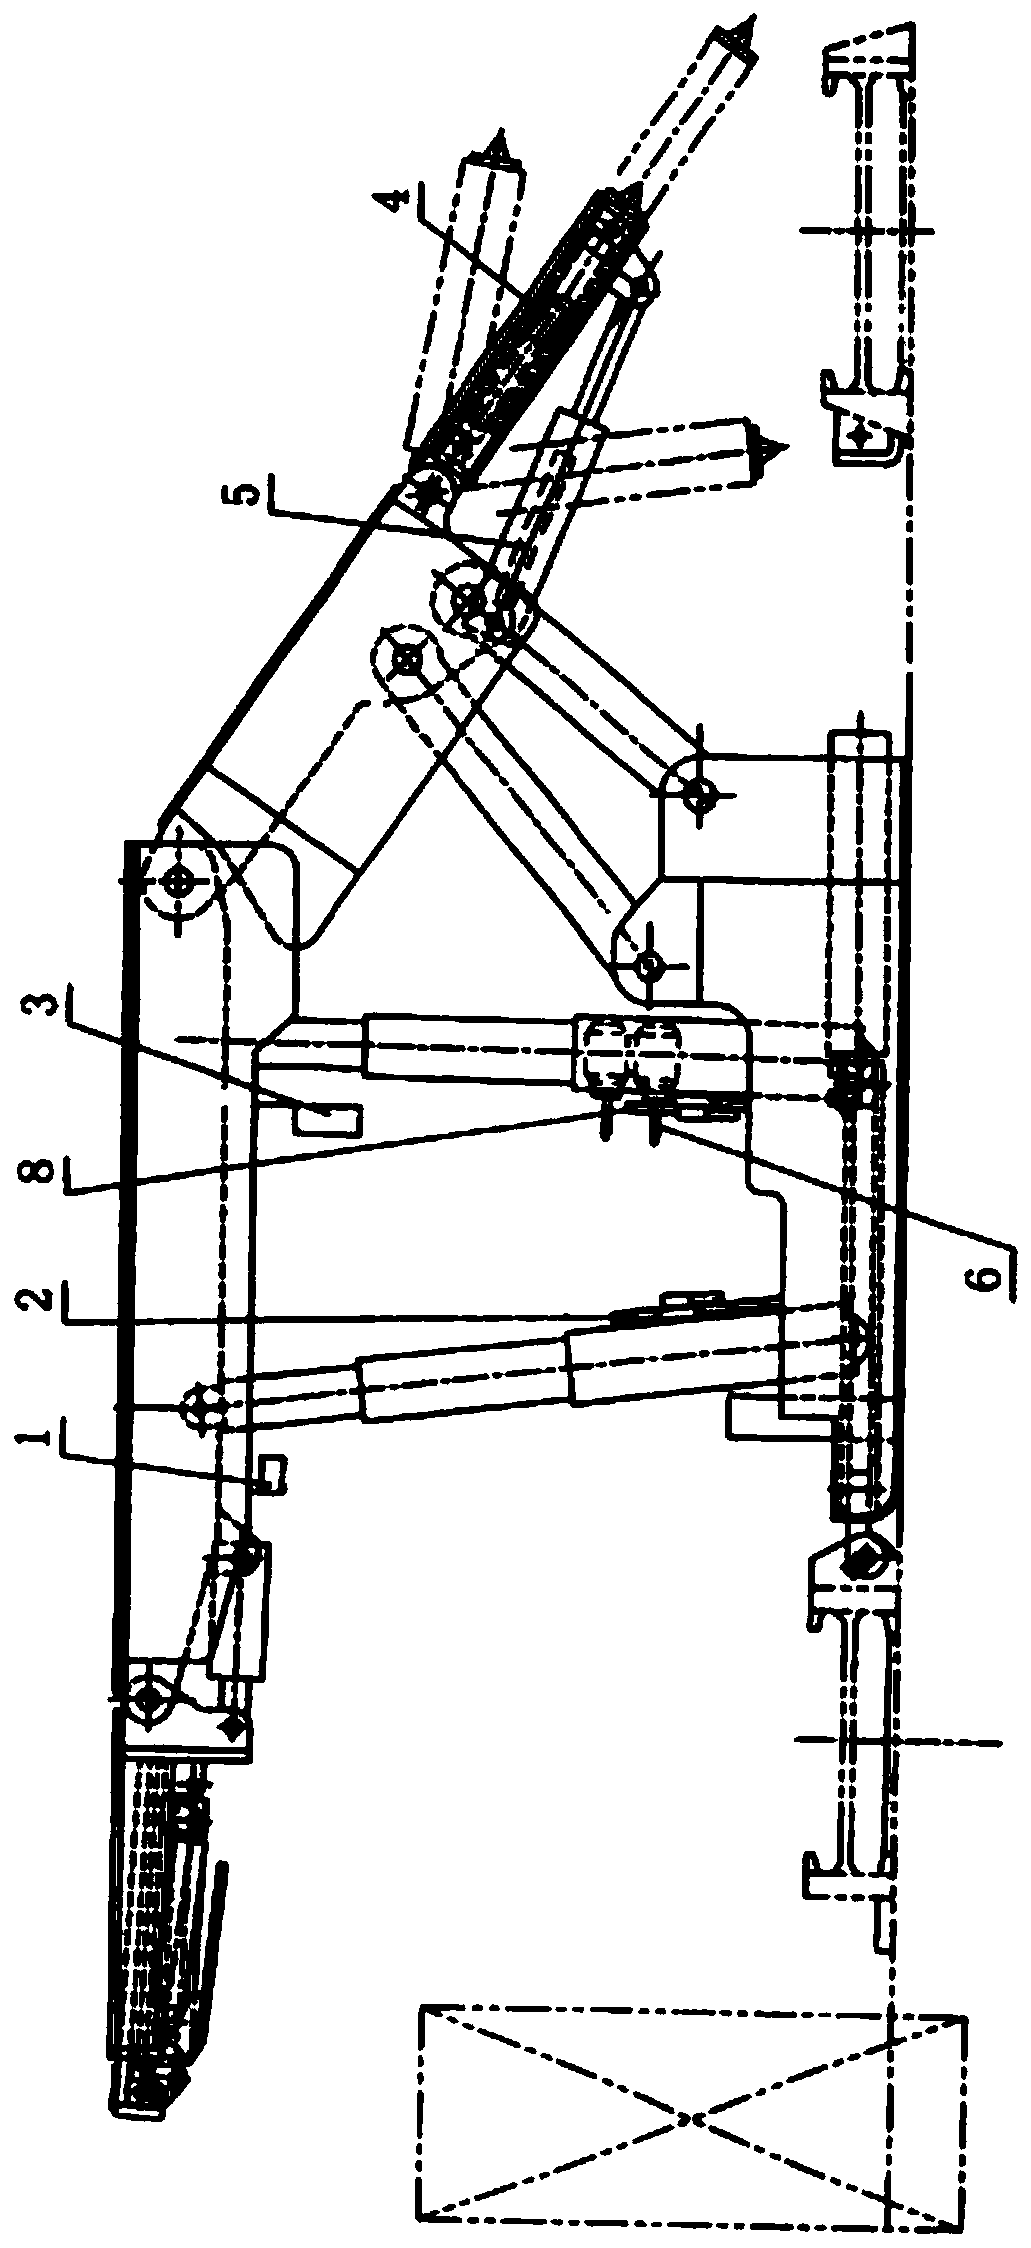 Hydraulic support frame